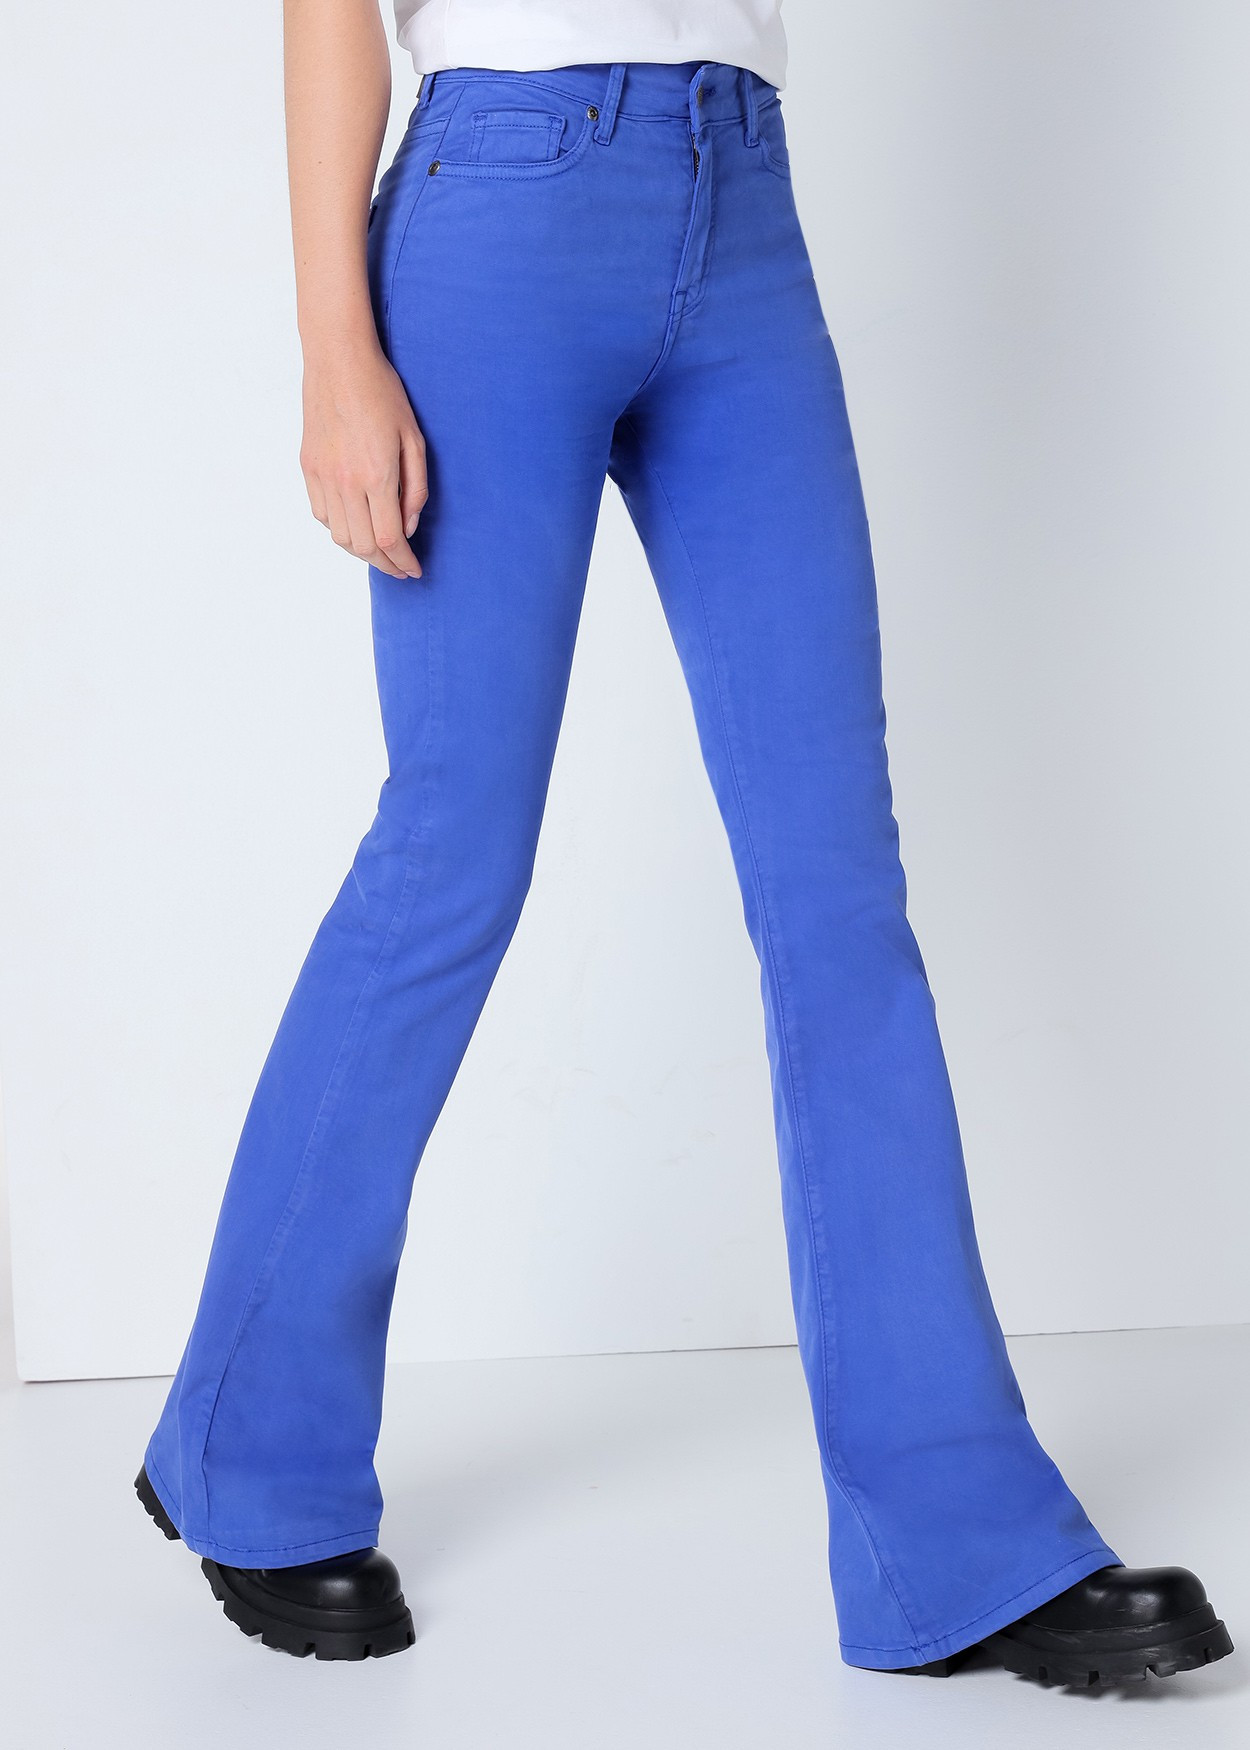 CARLA HELEN - Pantalon Couleur Taille Haute | Coupe Évasé | Taille en pouces Cimarron